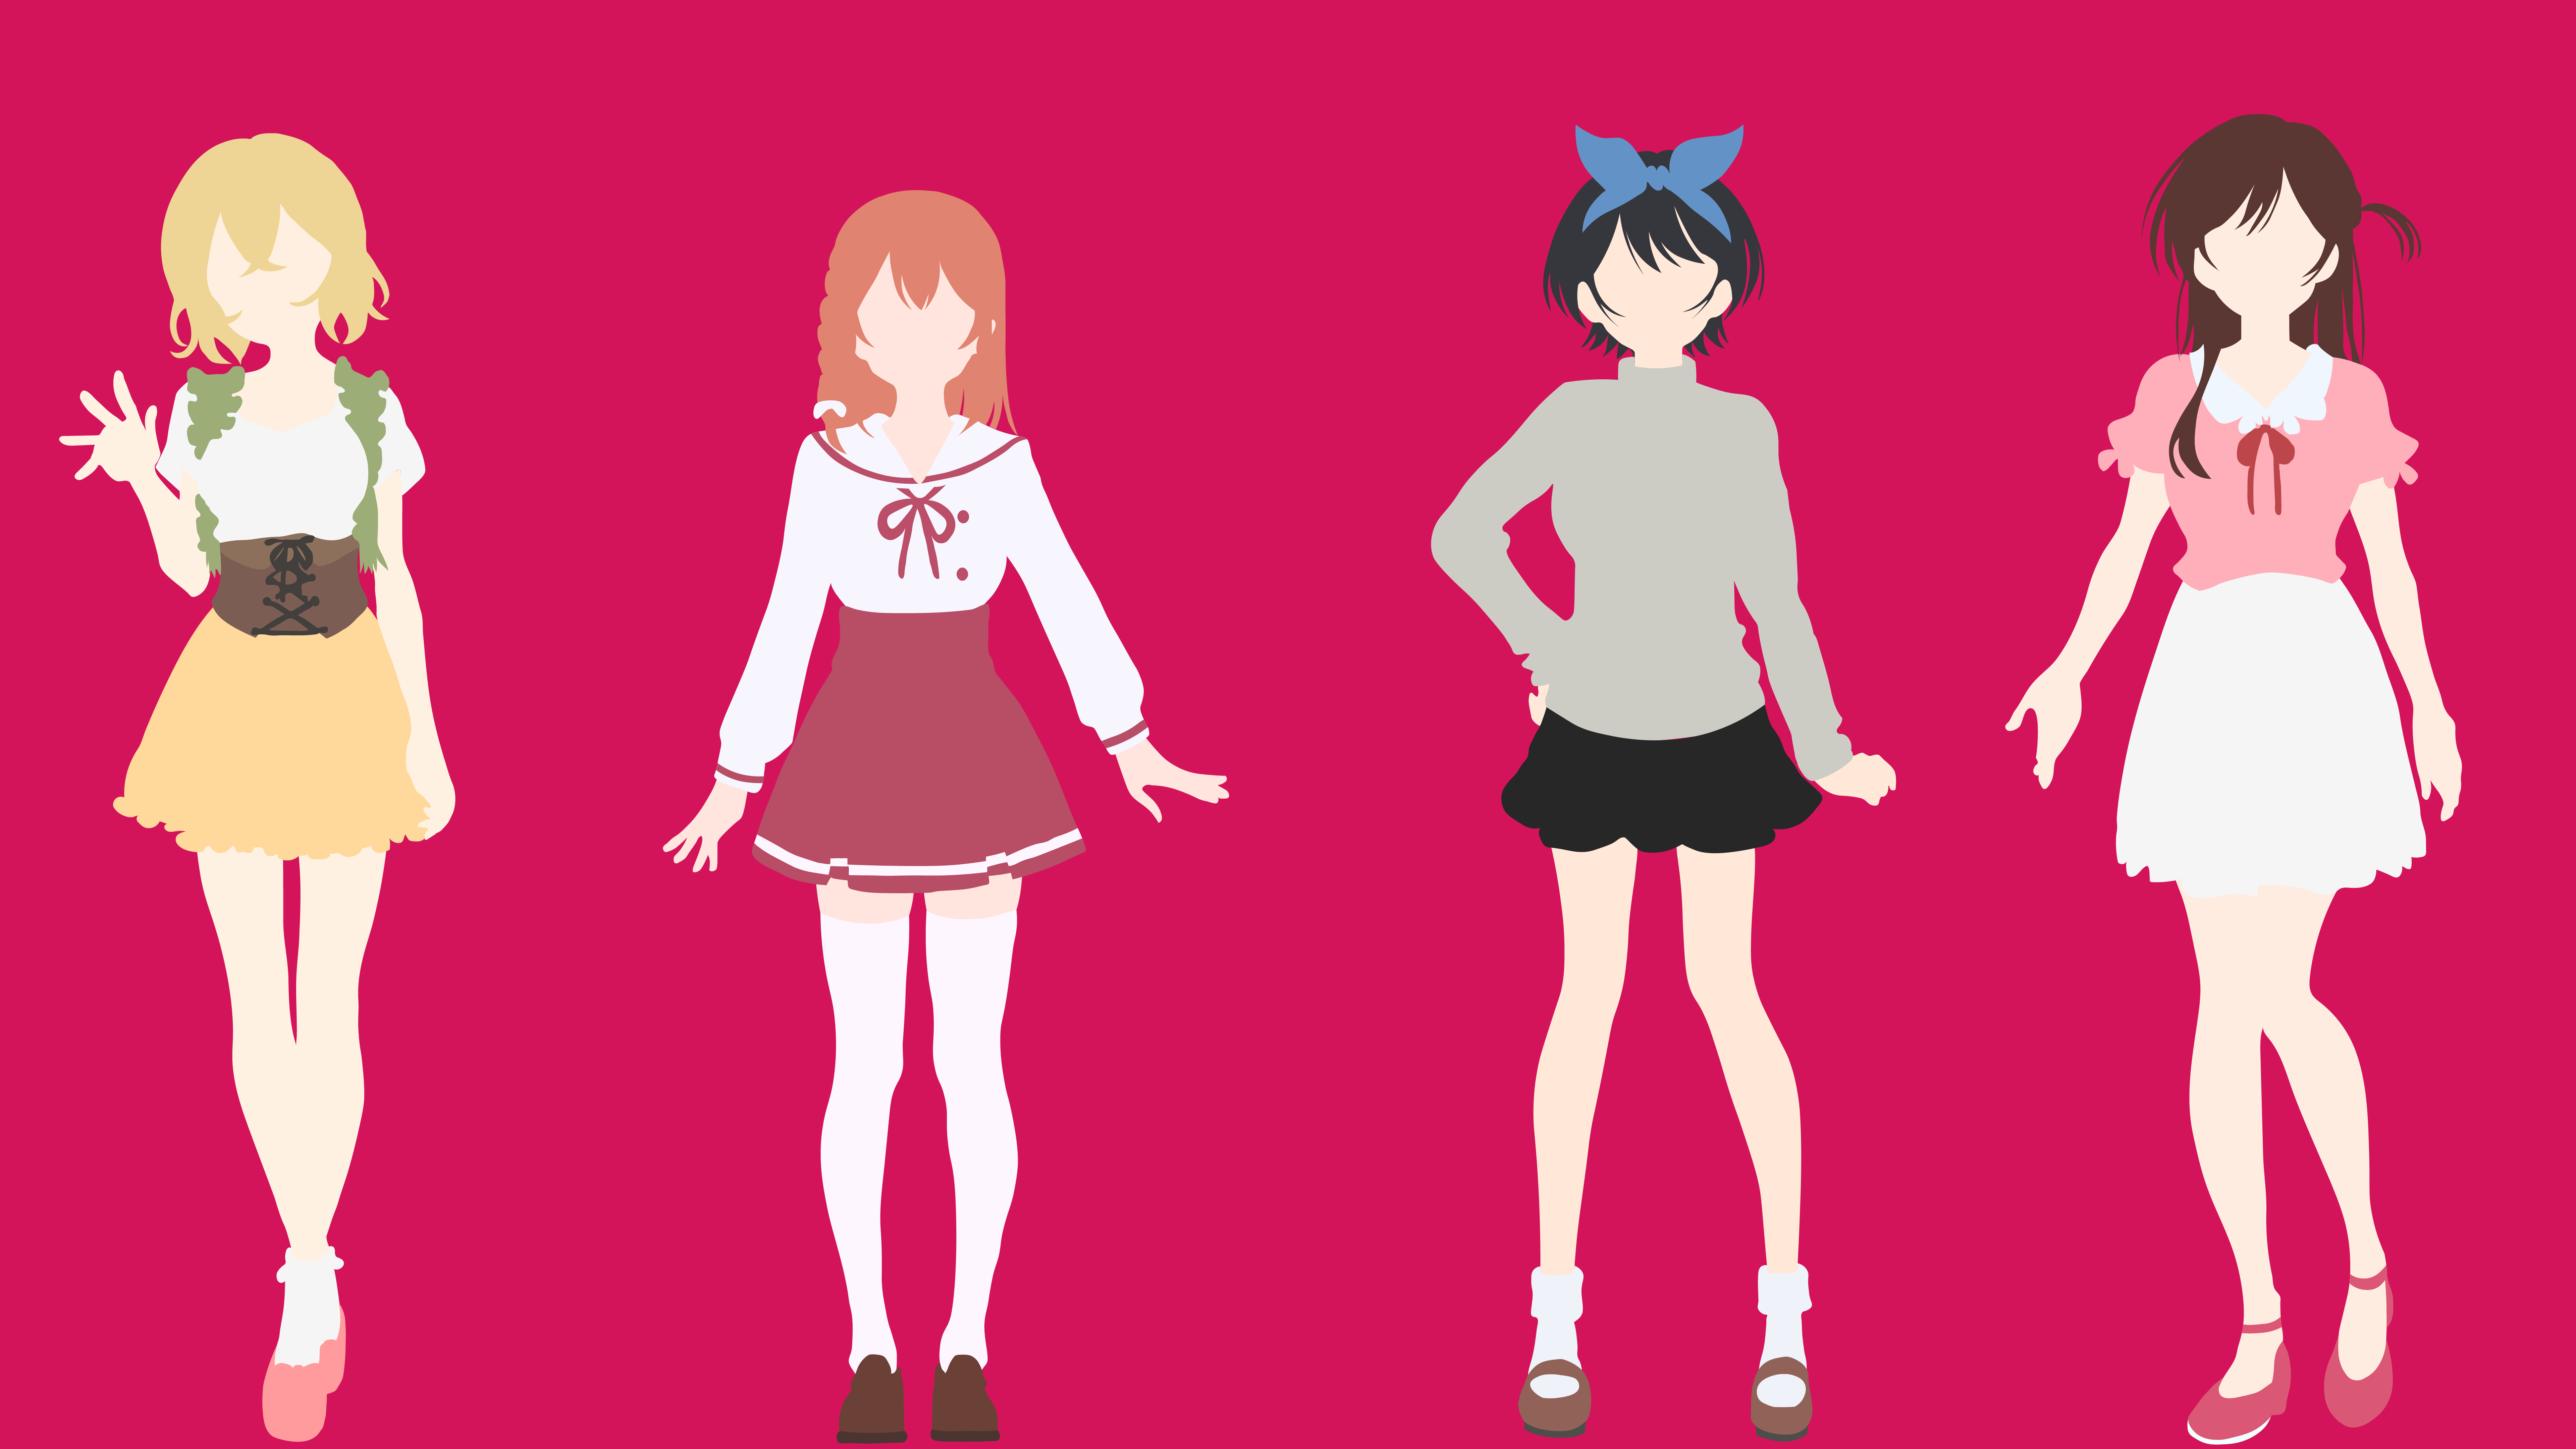 Anime Rent-A-Girlfriend 8k Ultra HD Wallpaper by rowel eshan